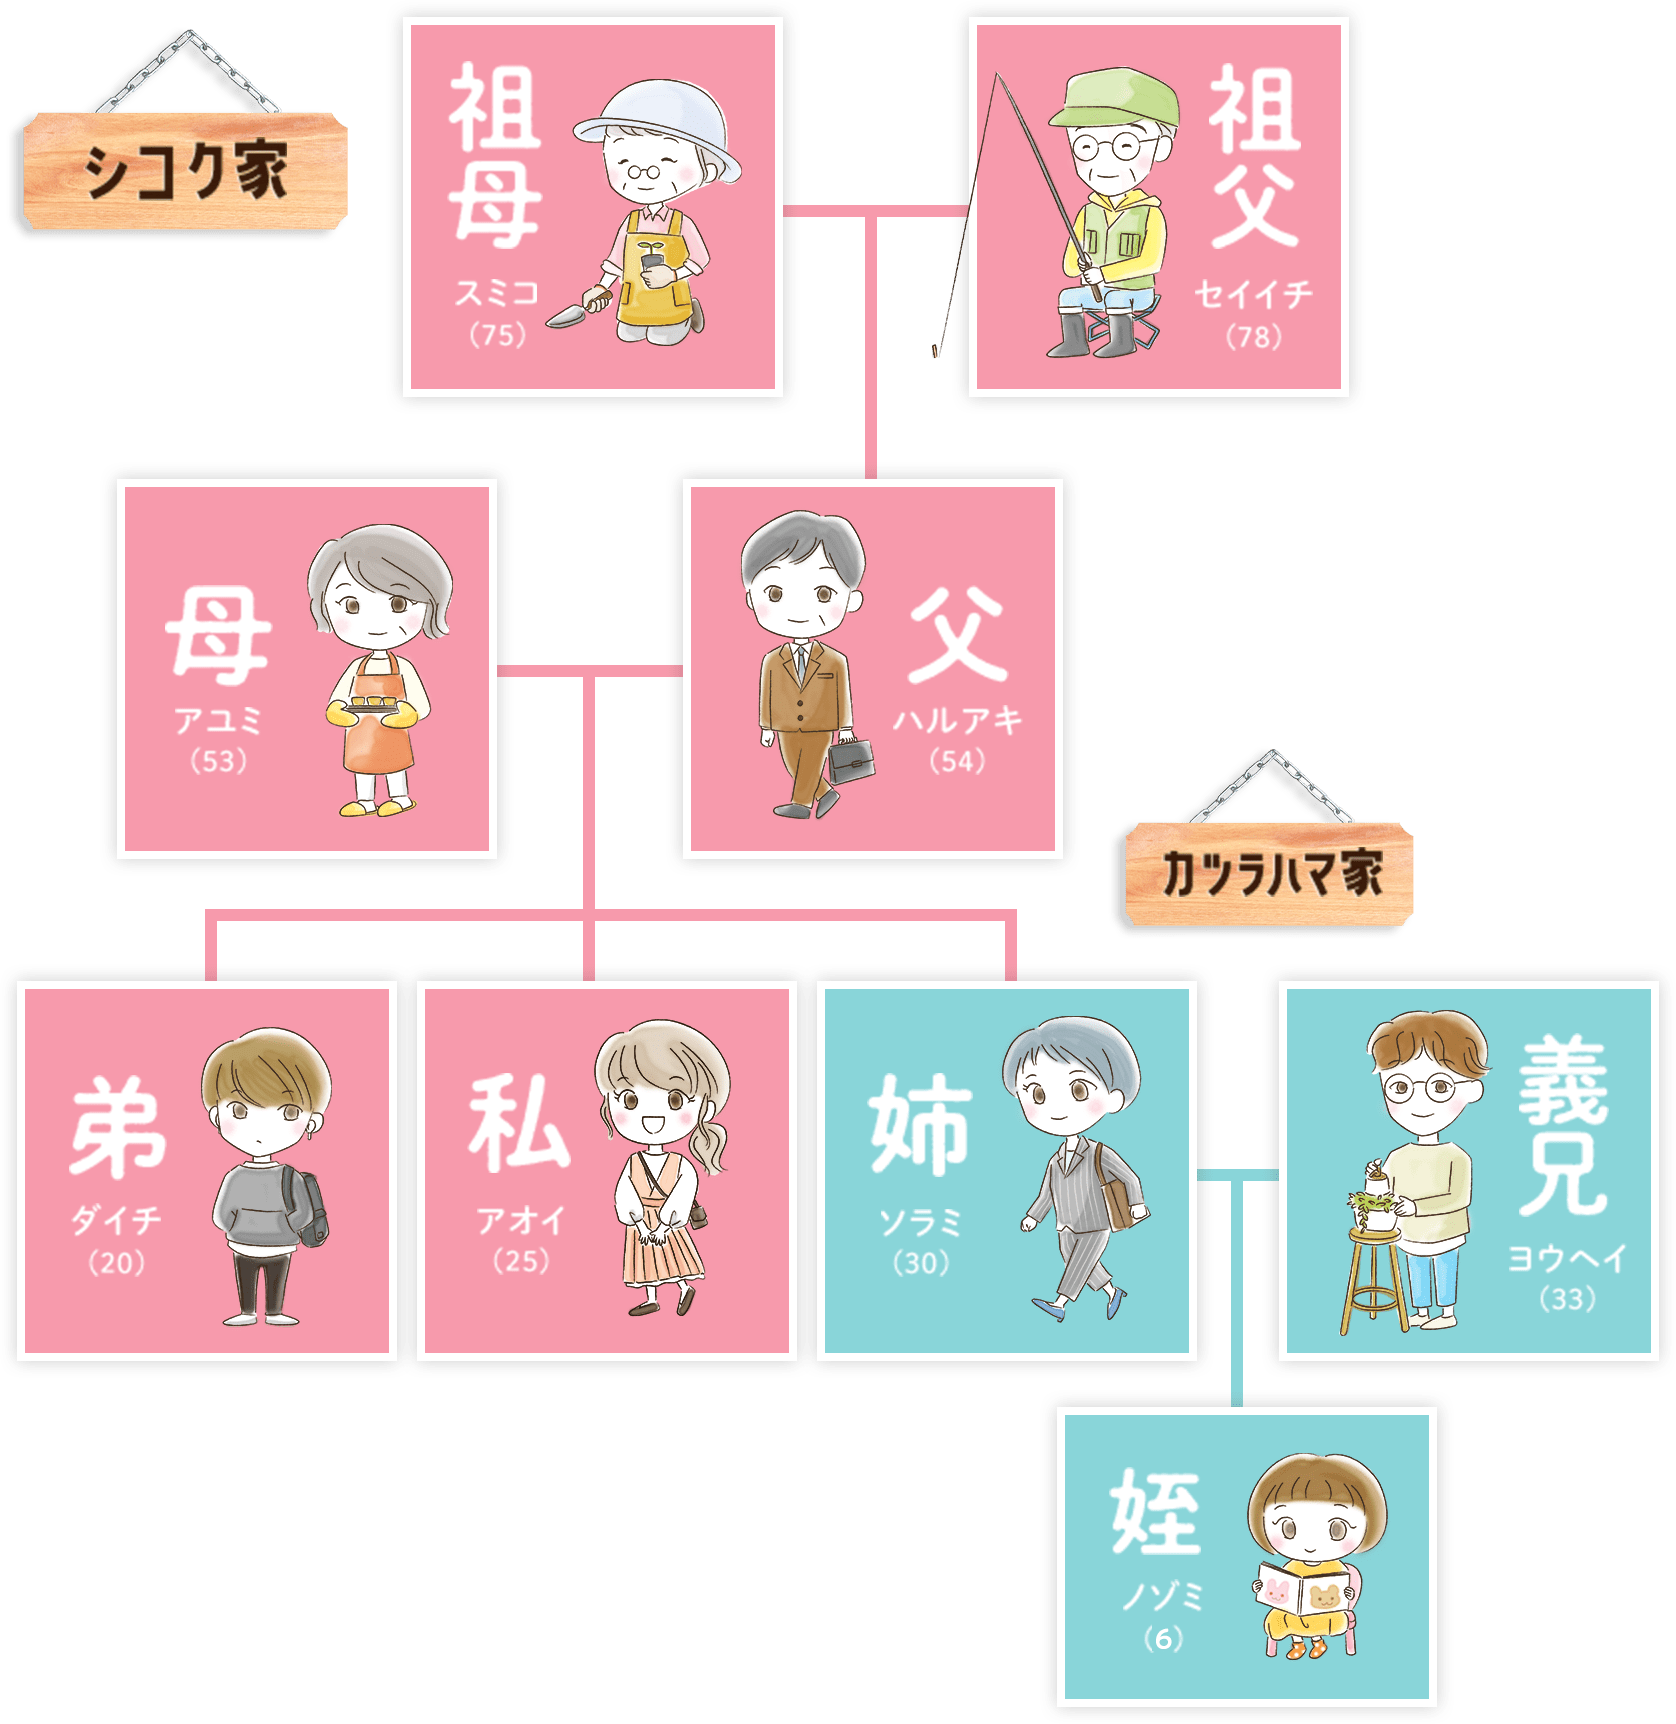 シコク家の家系図のイメージ